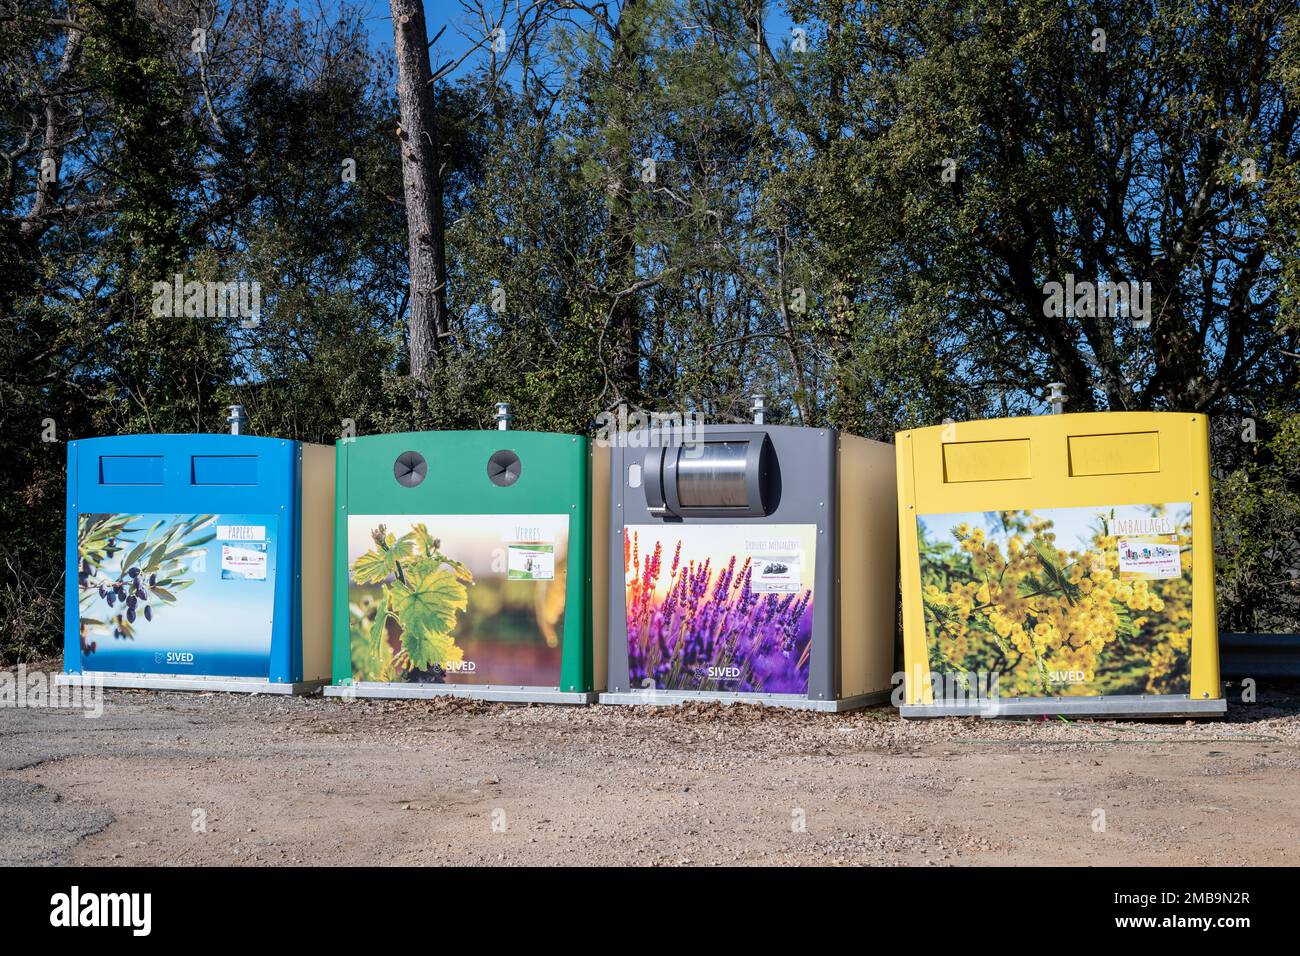 Point de recyclage avec conteneurs de rue à code couleur dans le sud de la France. Bacs de recyclage colorés, concept de tri des déchets Banque D'Images